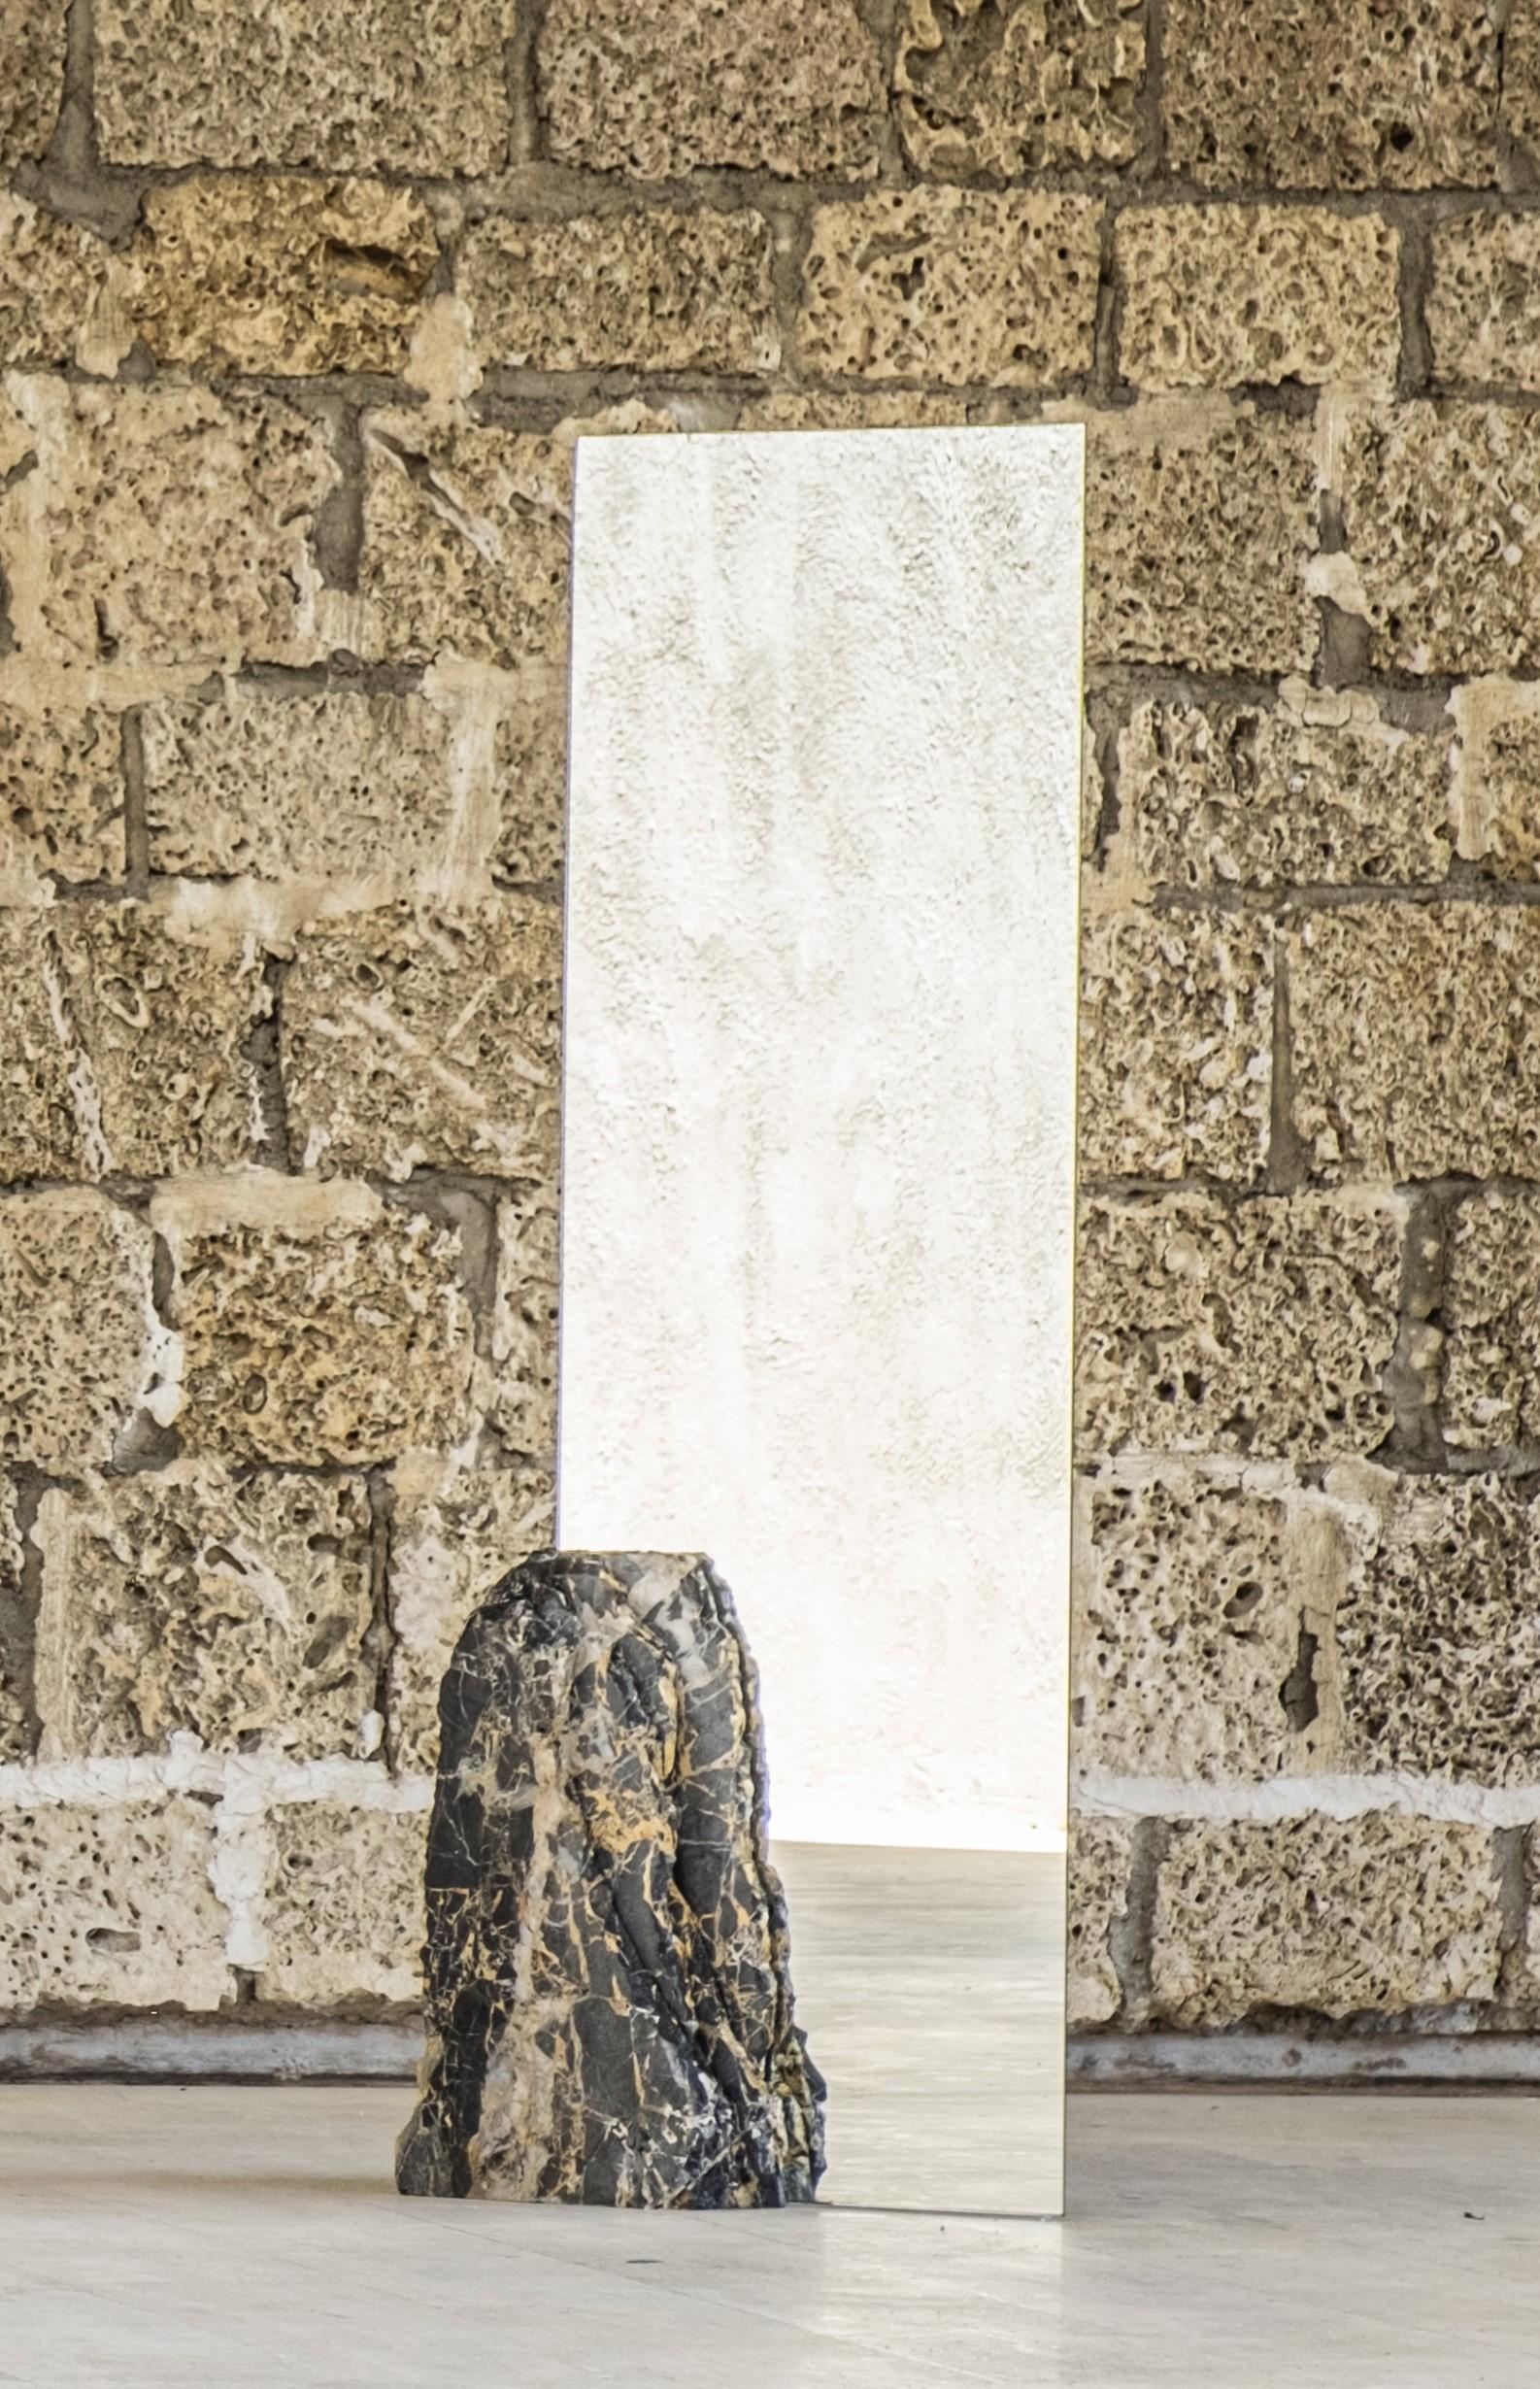 Tempus Spiegel von Andres Monnier
Einzigartig
Abmessungen: B 35 x L 70 x H 190 cm
MATERIALIEN: Schwarzer Portoro-Marmor.
Verfügbare Gesteinsarten: grauer, schwarzer und weißer Marmor, natürlicher und roter Travertin, Vulkangestein, Basalt,